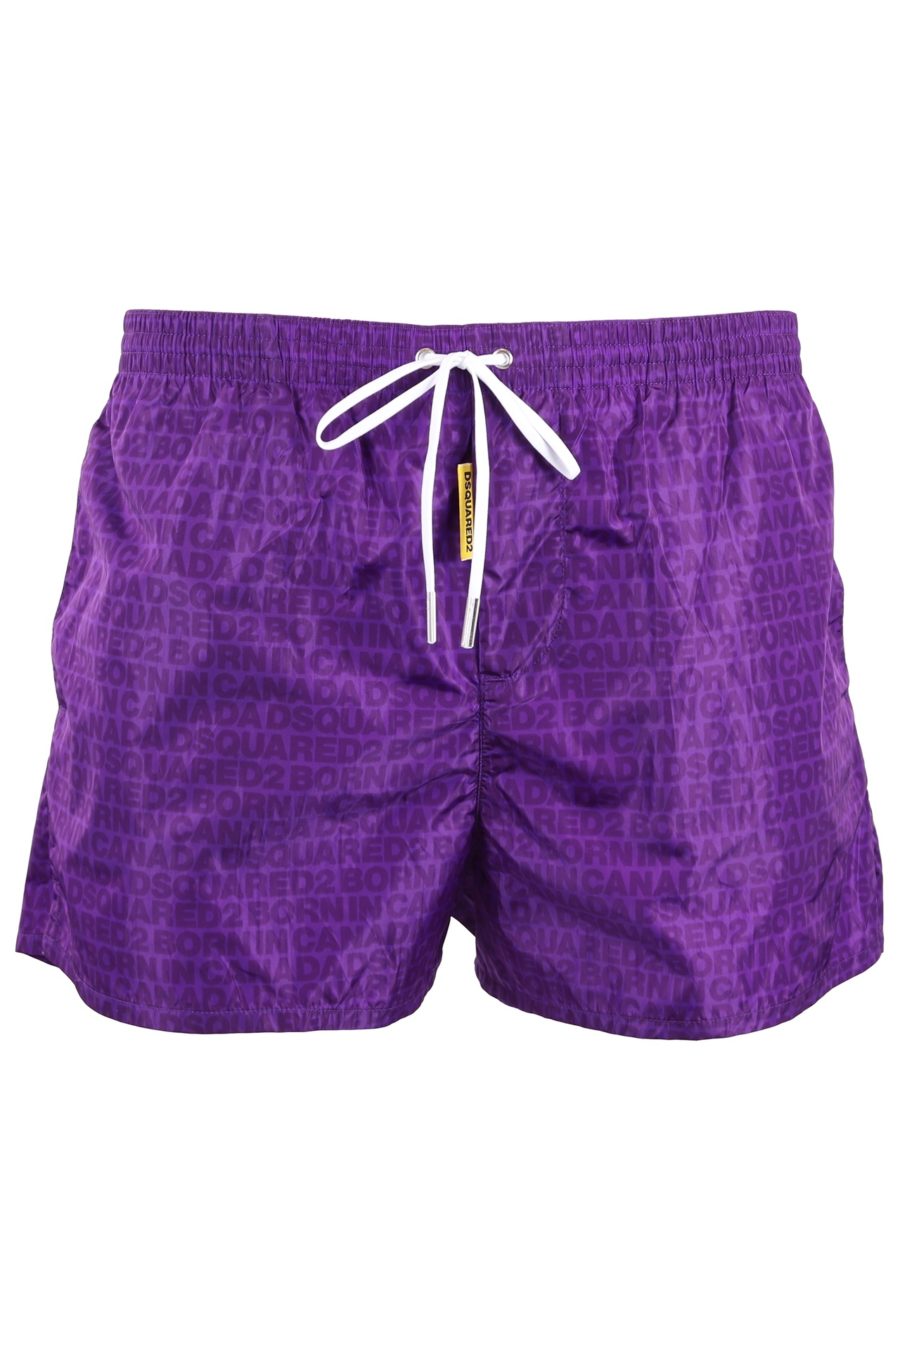 Swimming costume Dsquared2 purple - 41cebb6973ad1d0a39de589daf171d6e85076264